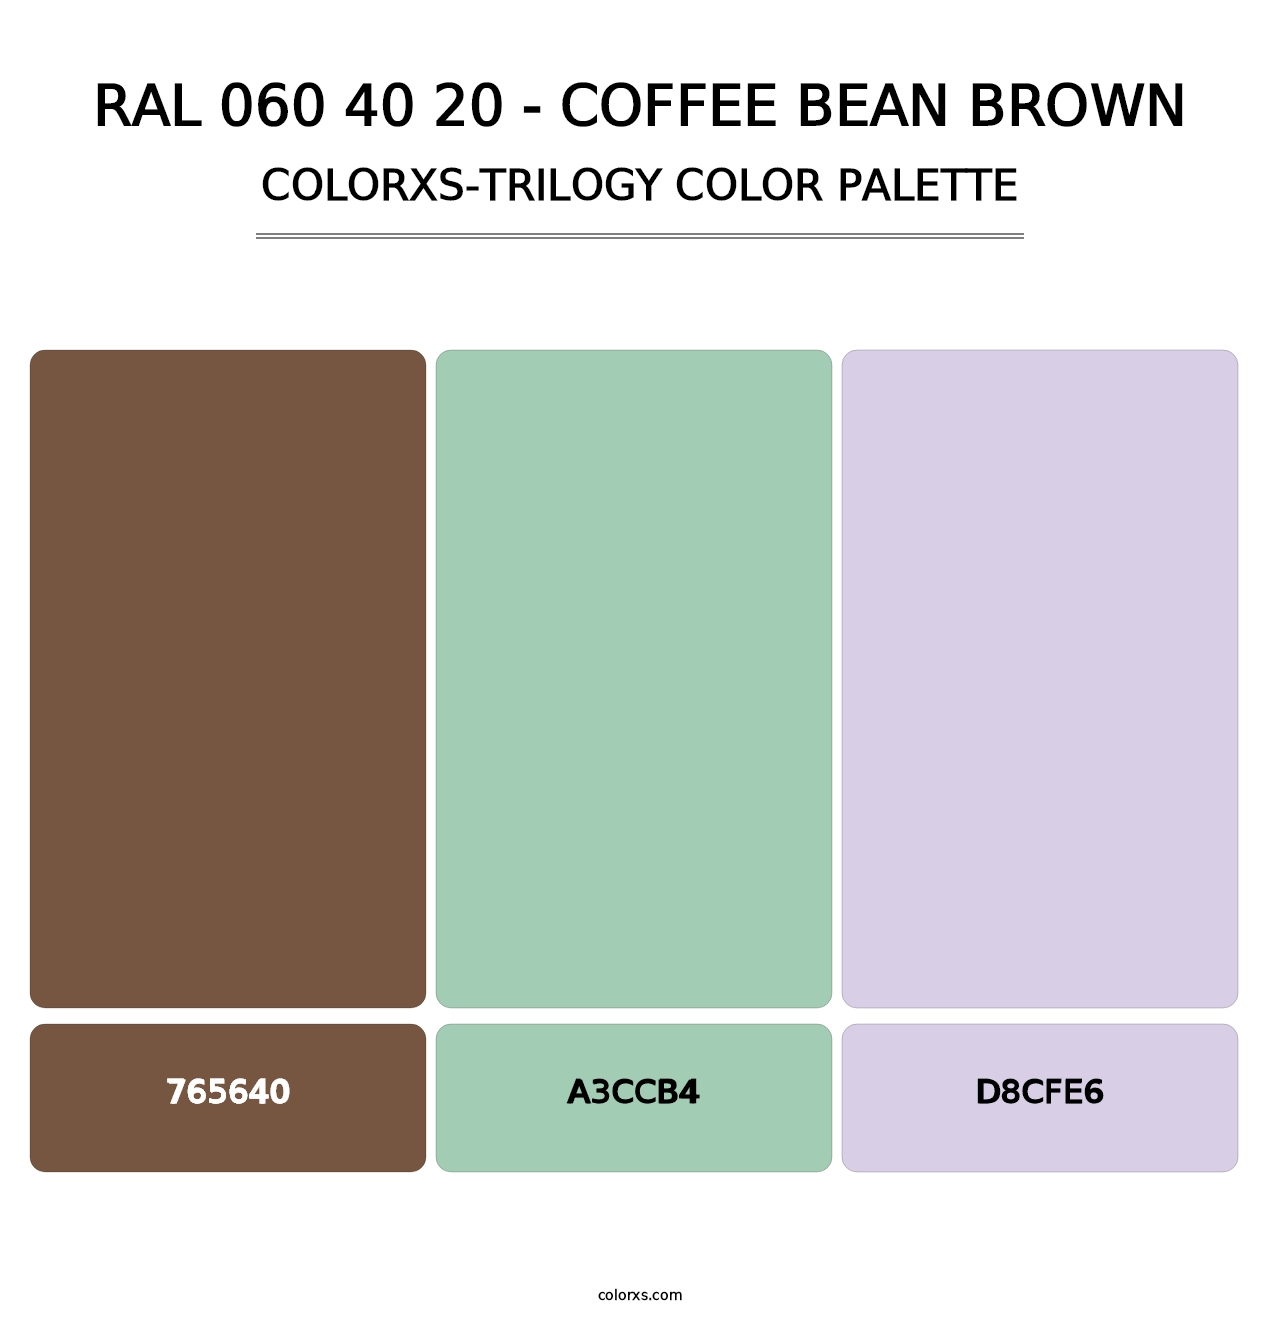 RAL 060 40 20 - Coffee Bean Brown - Colorxs Trilogy Palette